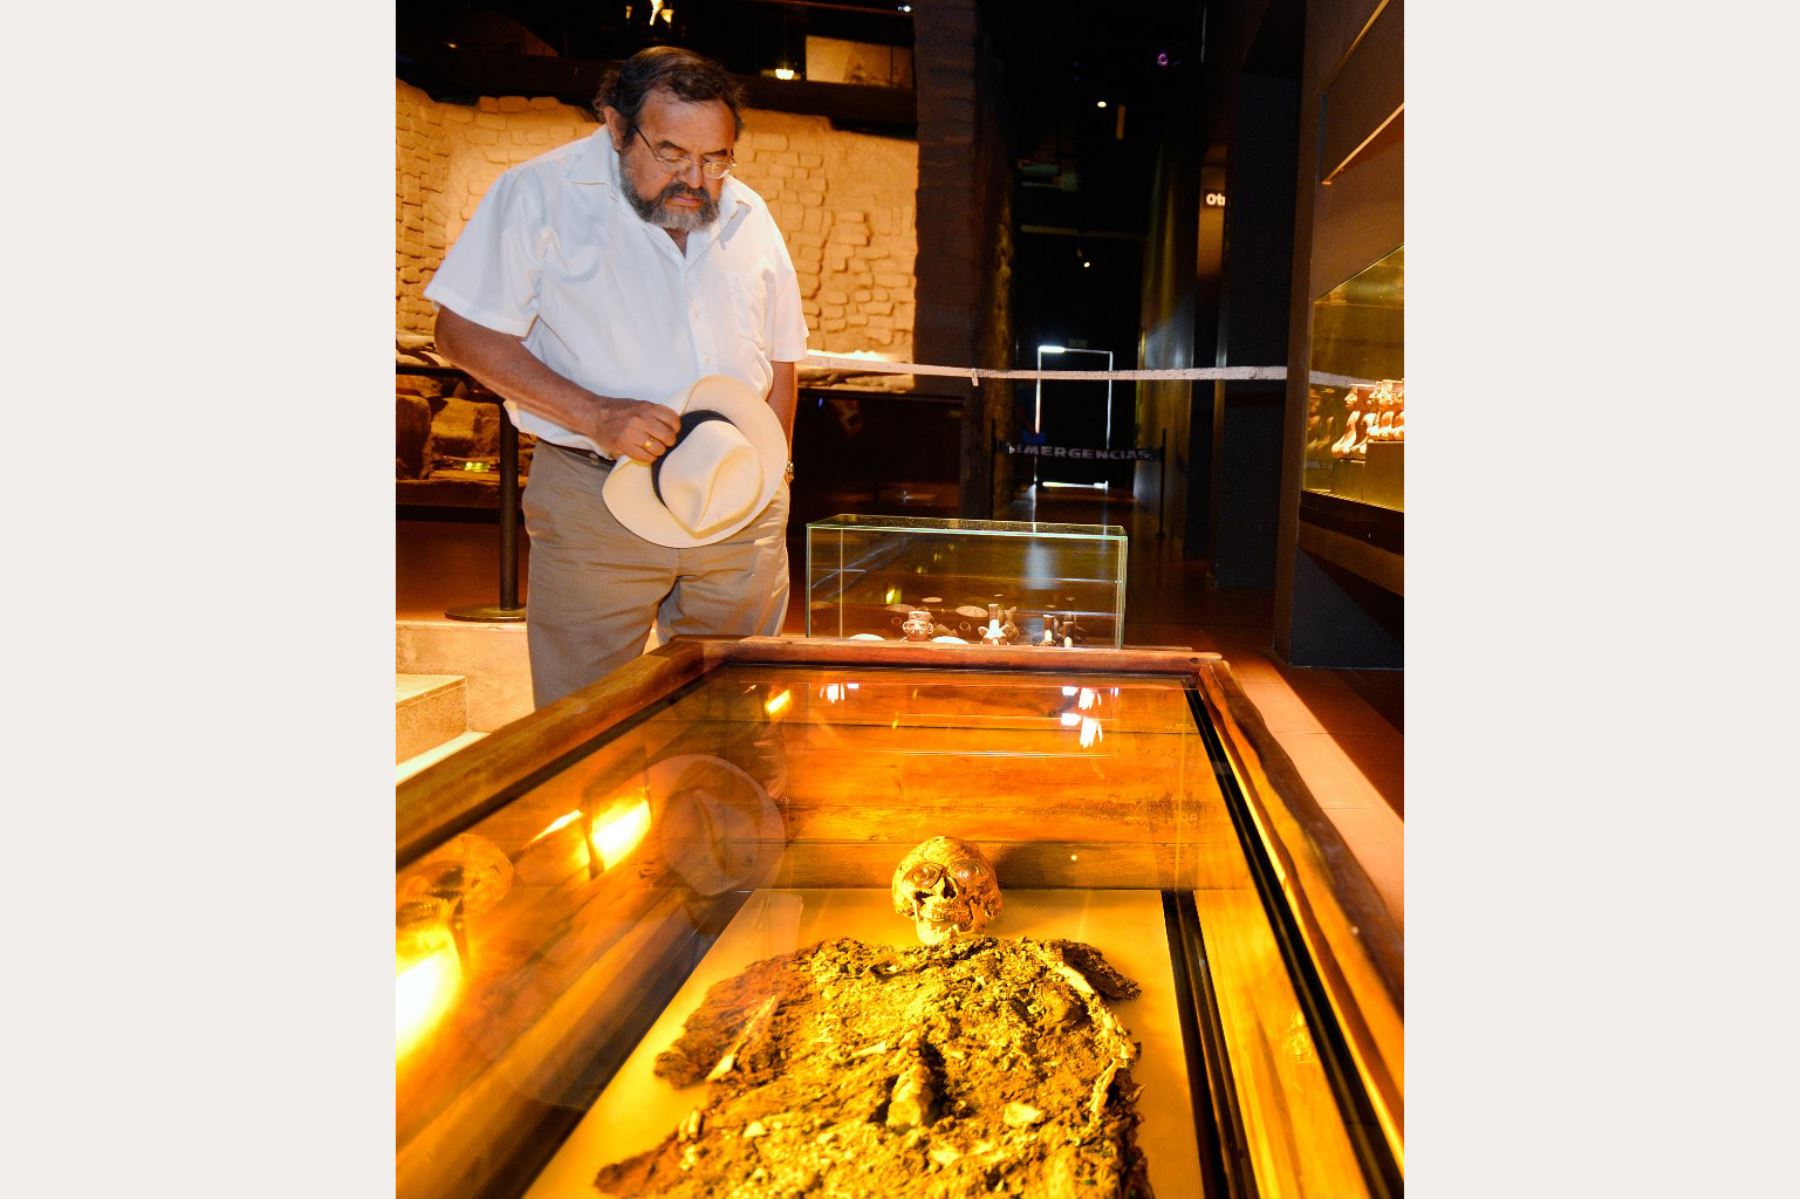 El arqueólogo peruano Walter Alva observa los restos del Señor de Sipán en el Museo Tumba Real en Lambayeque.

Foto: AFP